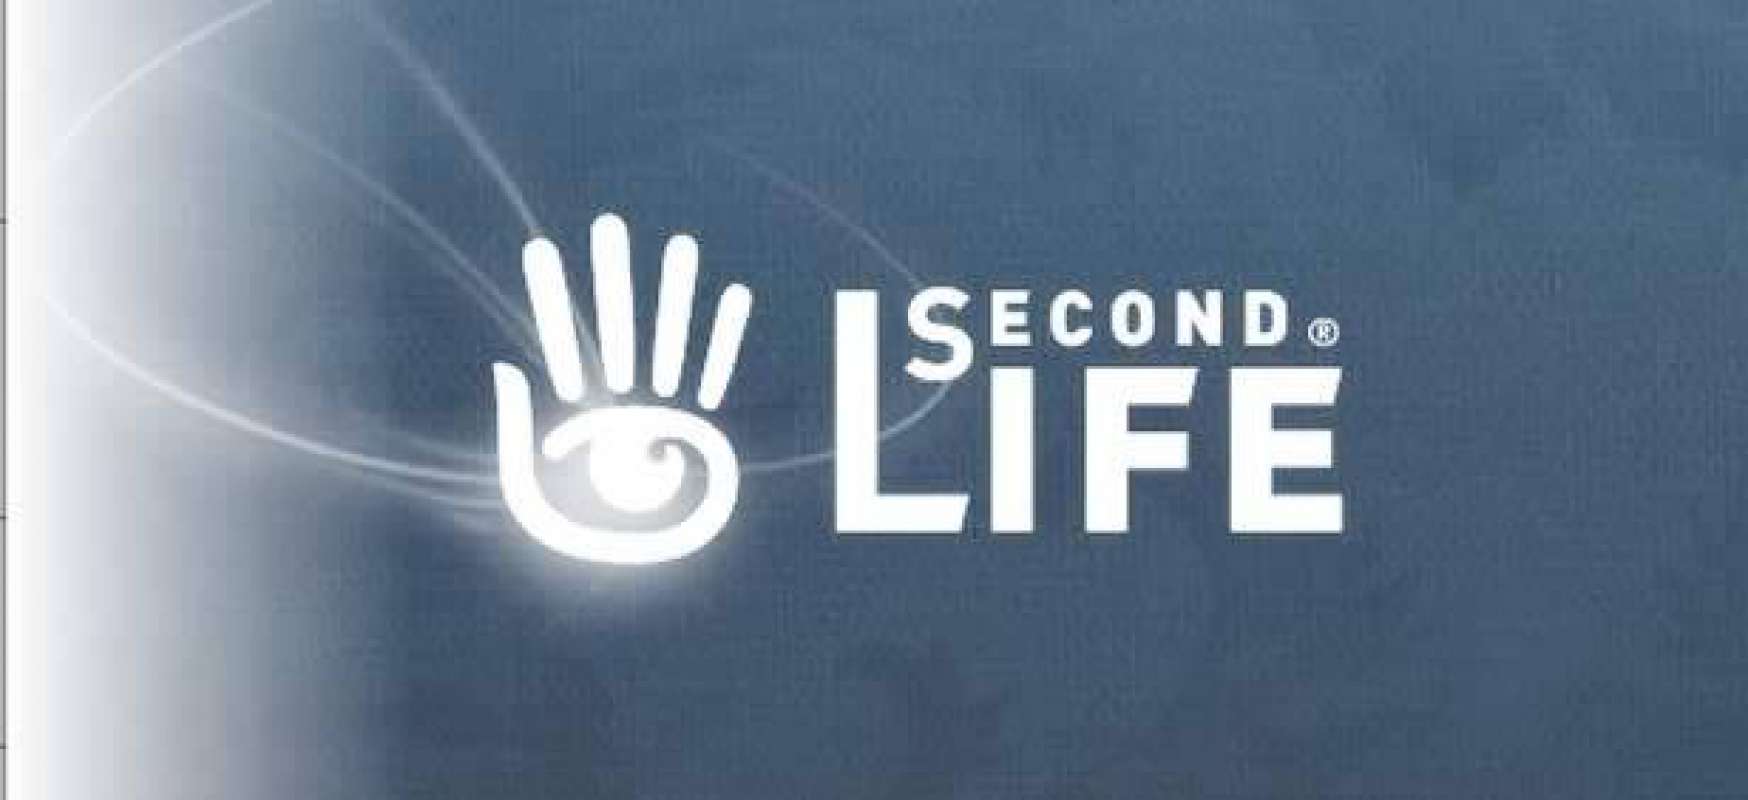 Second de. Секонд лайф. Секонд лого. Секонд лайф логотип. Second Life игра.